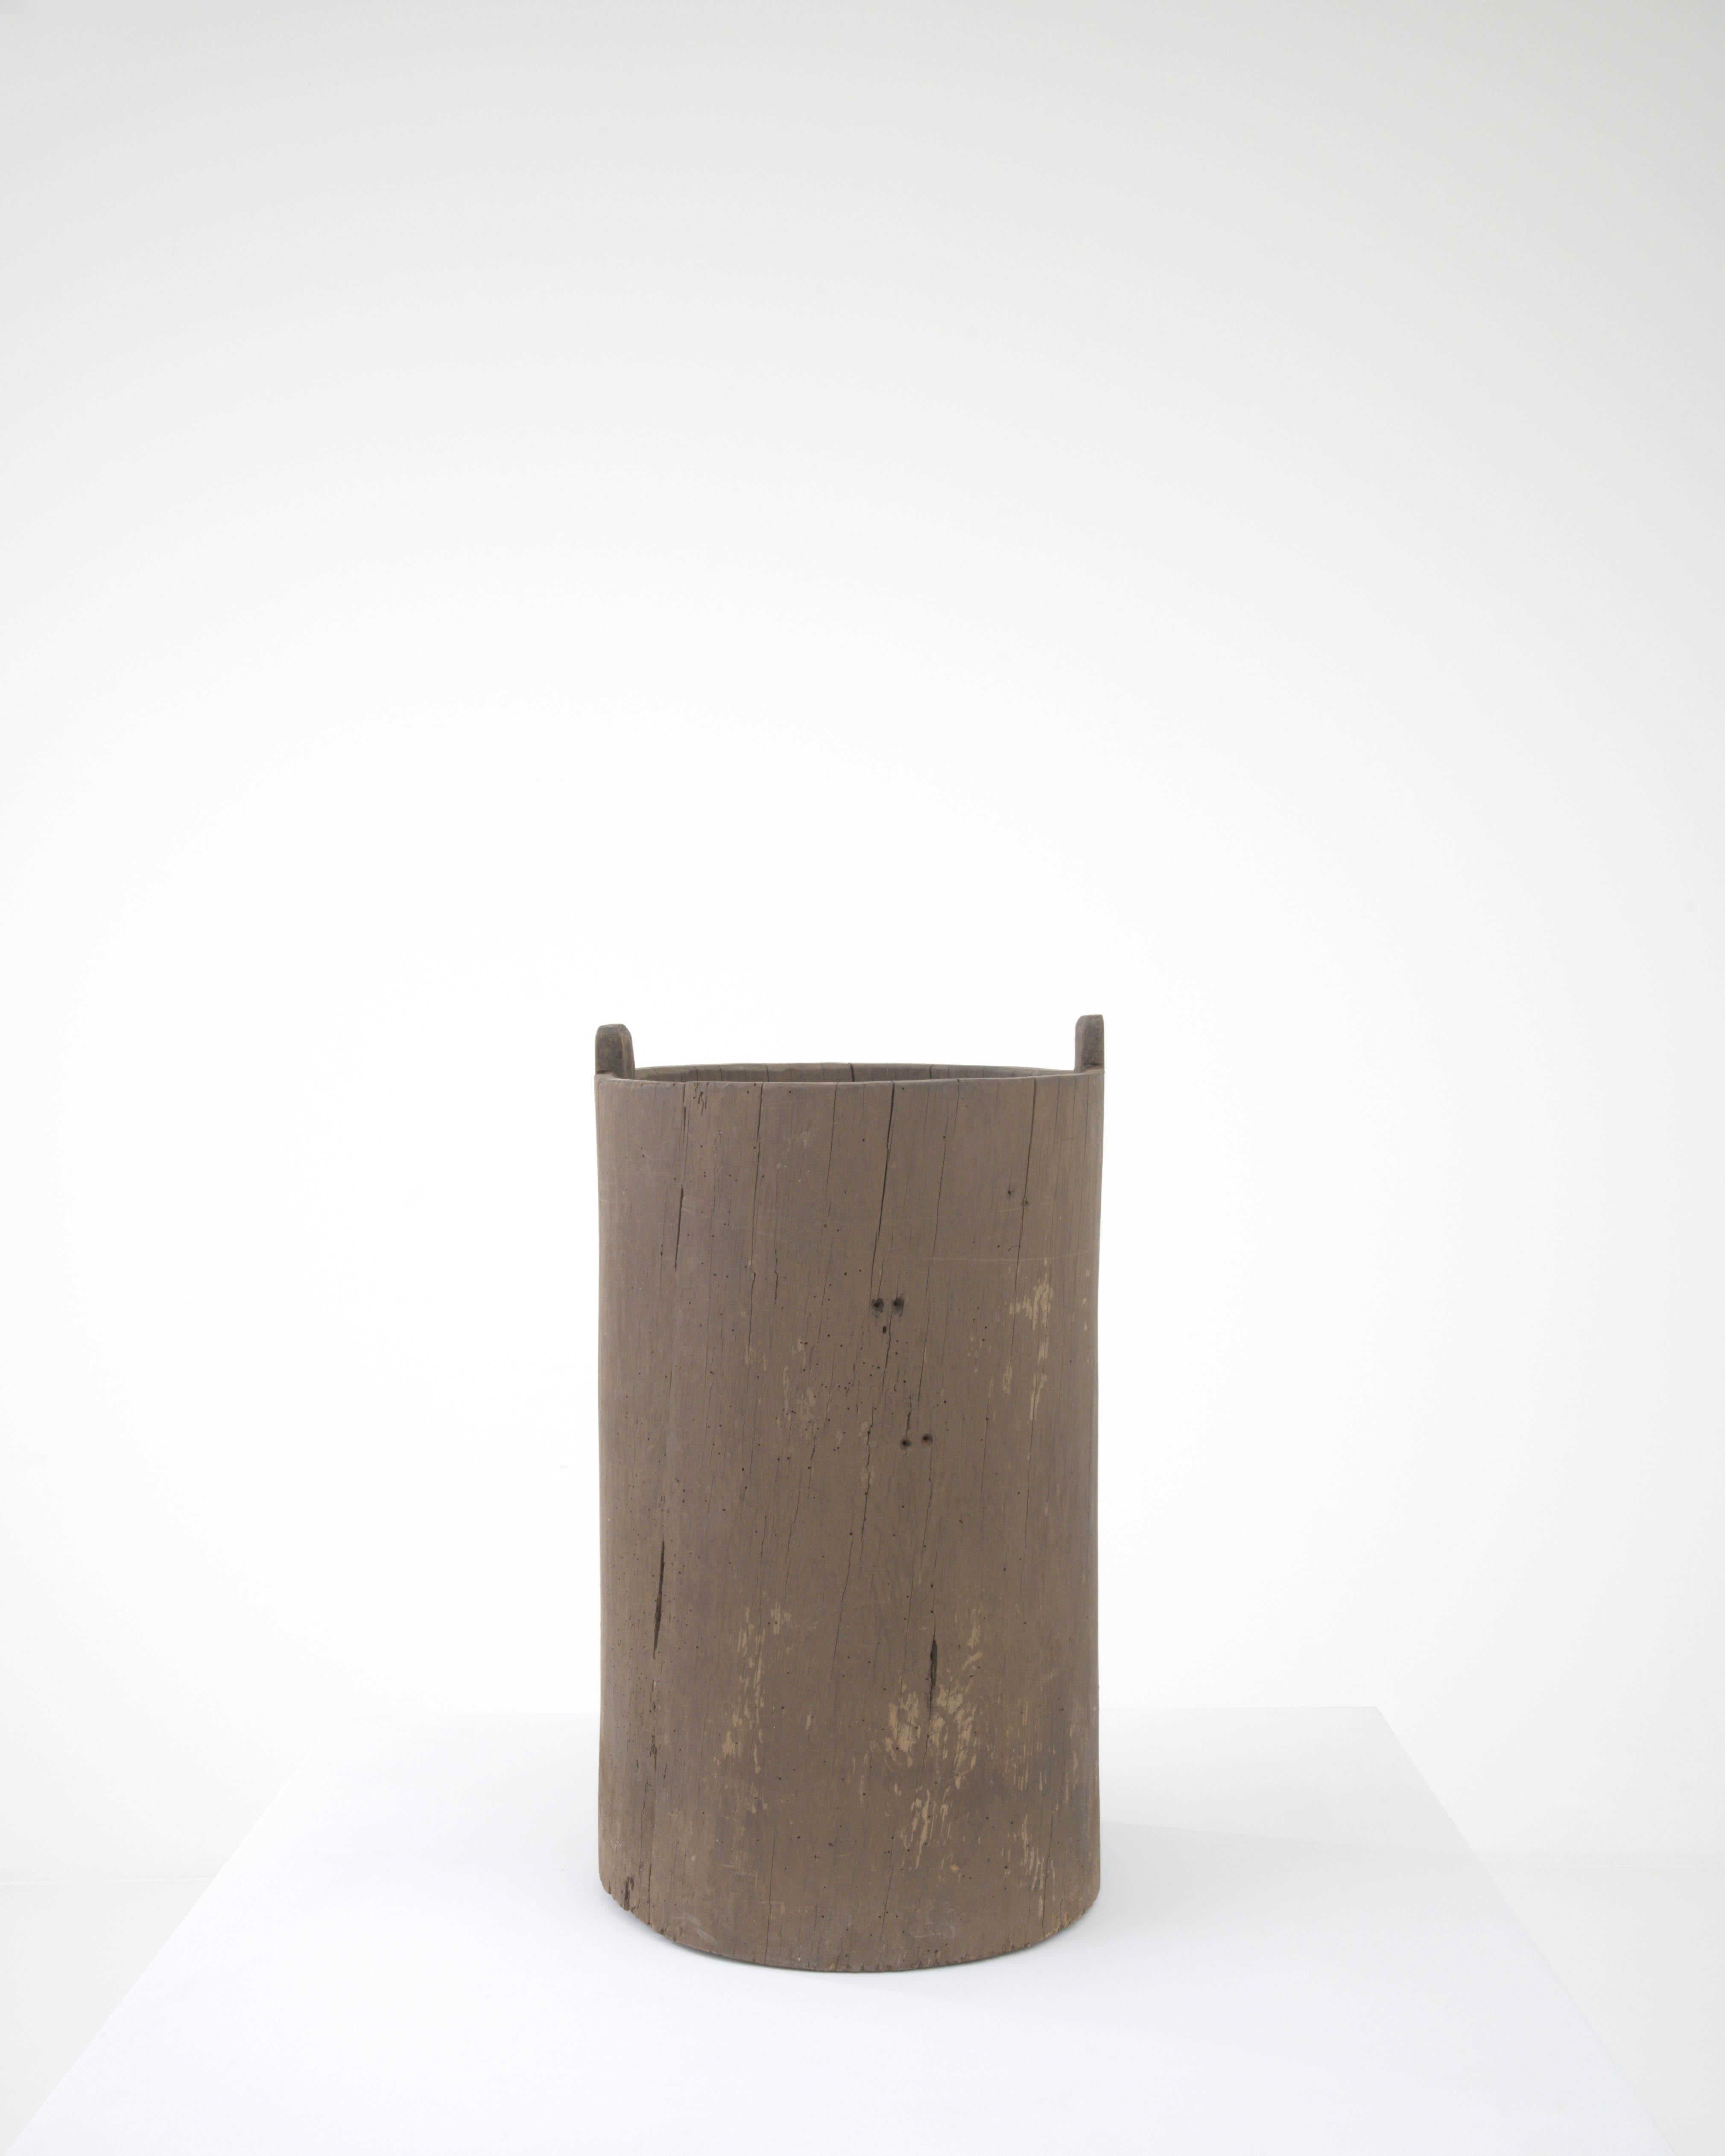 Sehen Sie sich den rustikalen Reiz dieses europäischen Holzkornbehälters aus dem 19. Jahrhundert an, der die Einfachheit und Robustheit des Landlebens verkörpert. Dieser aus massivem Holz gefertigte Behälter hat die Zeit überdauert und erzählt die